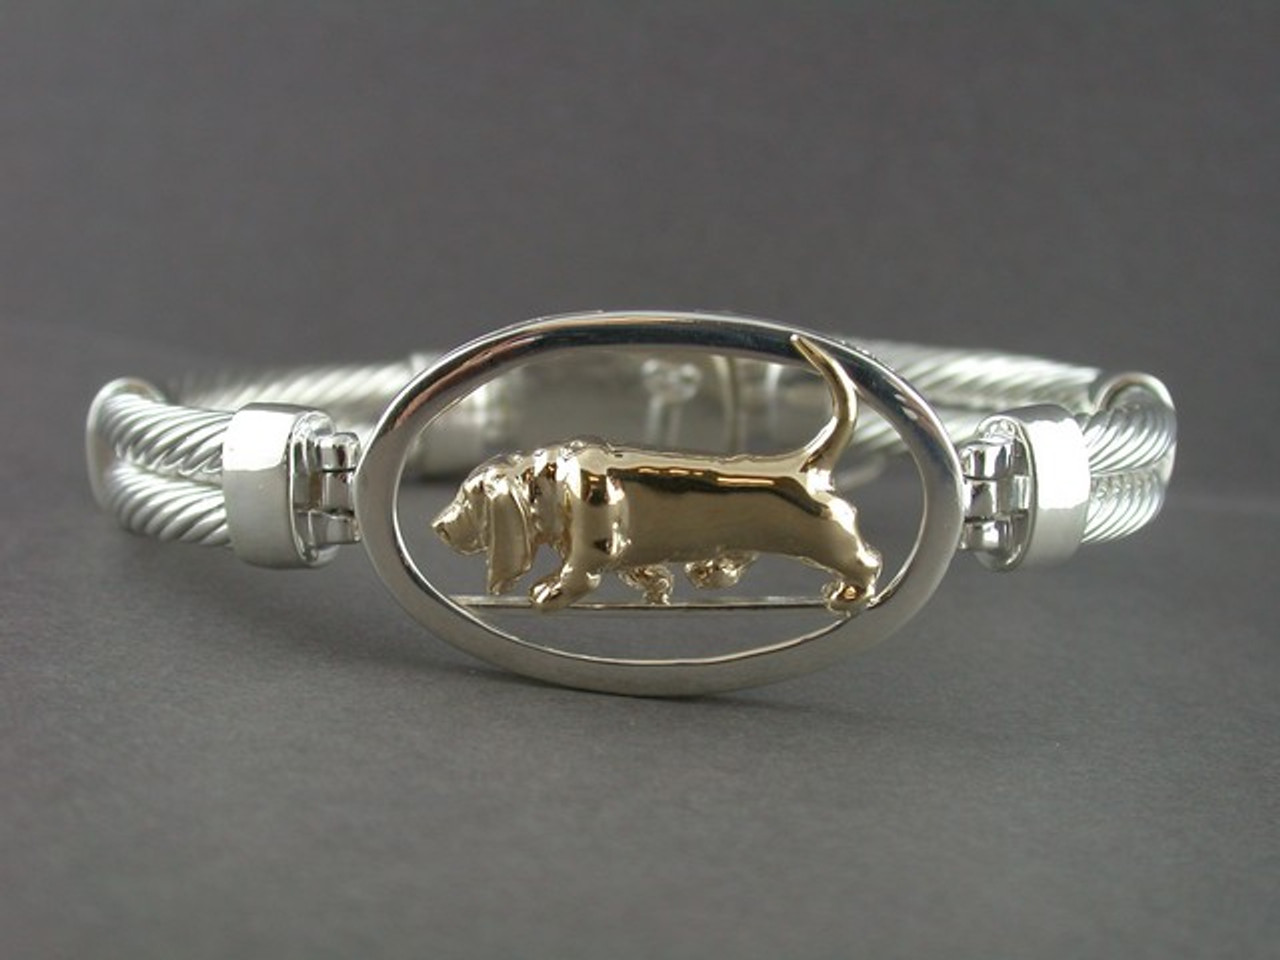 Basset Hound bracelet